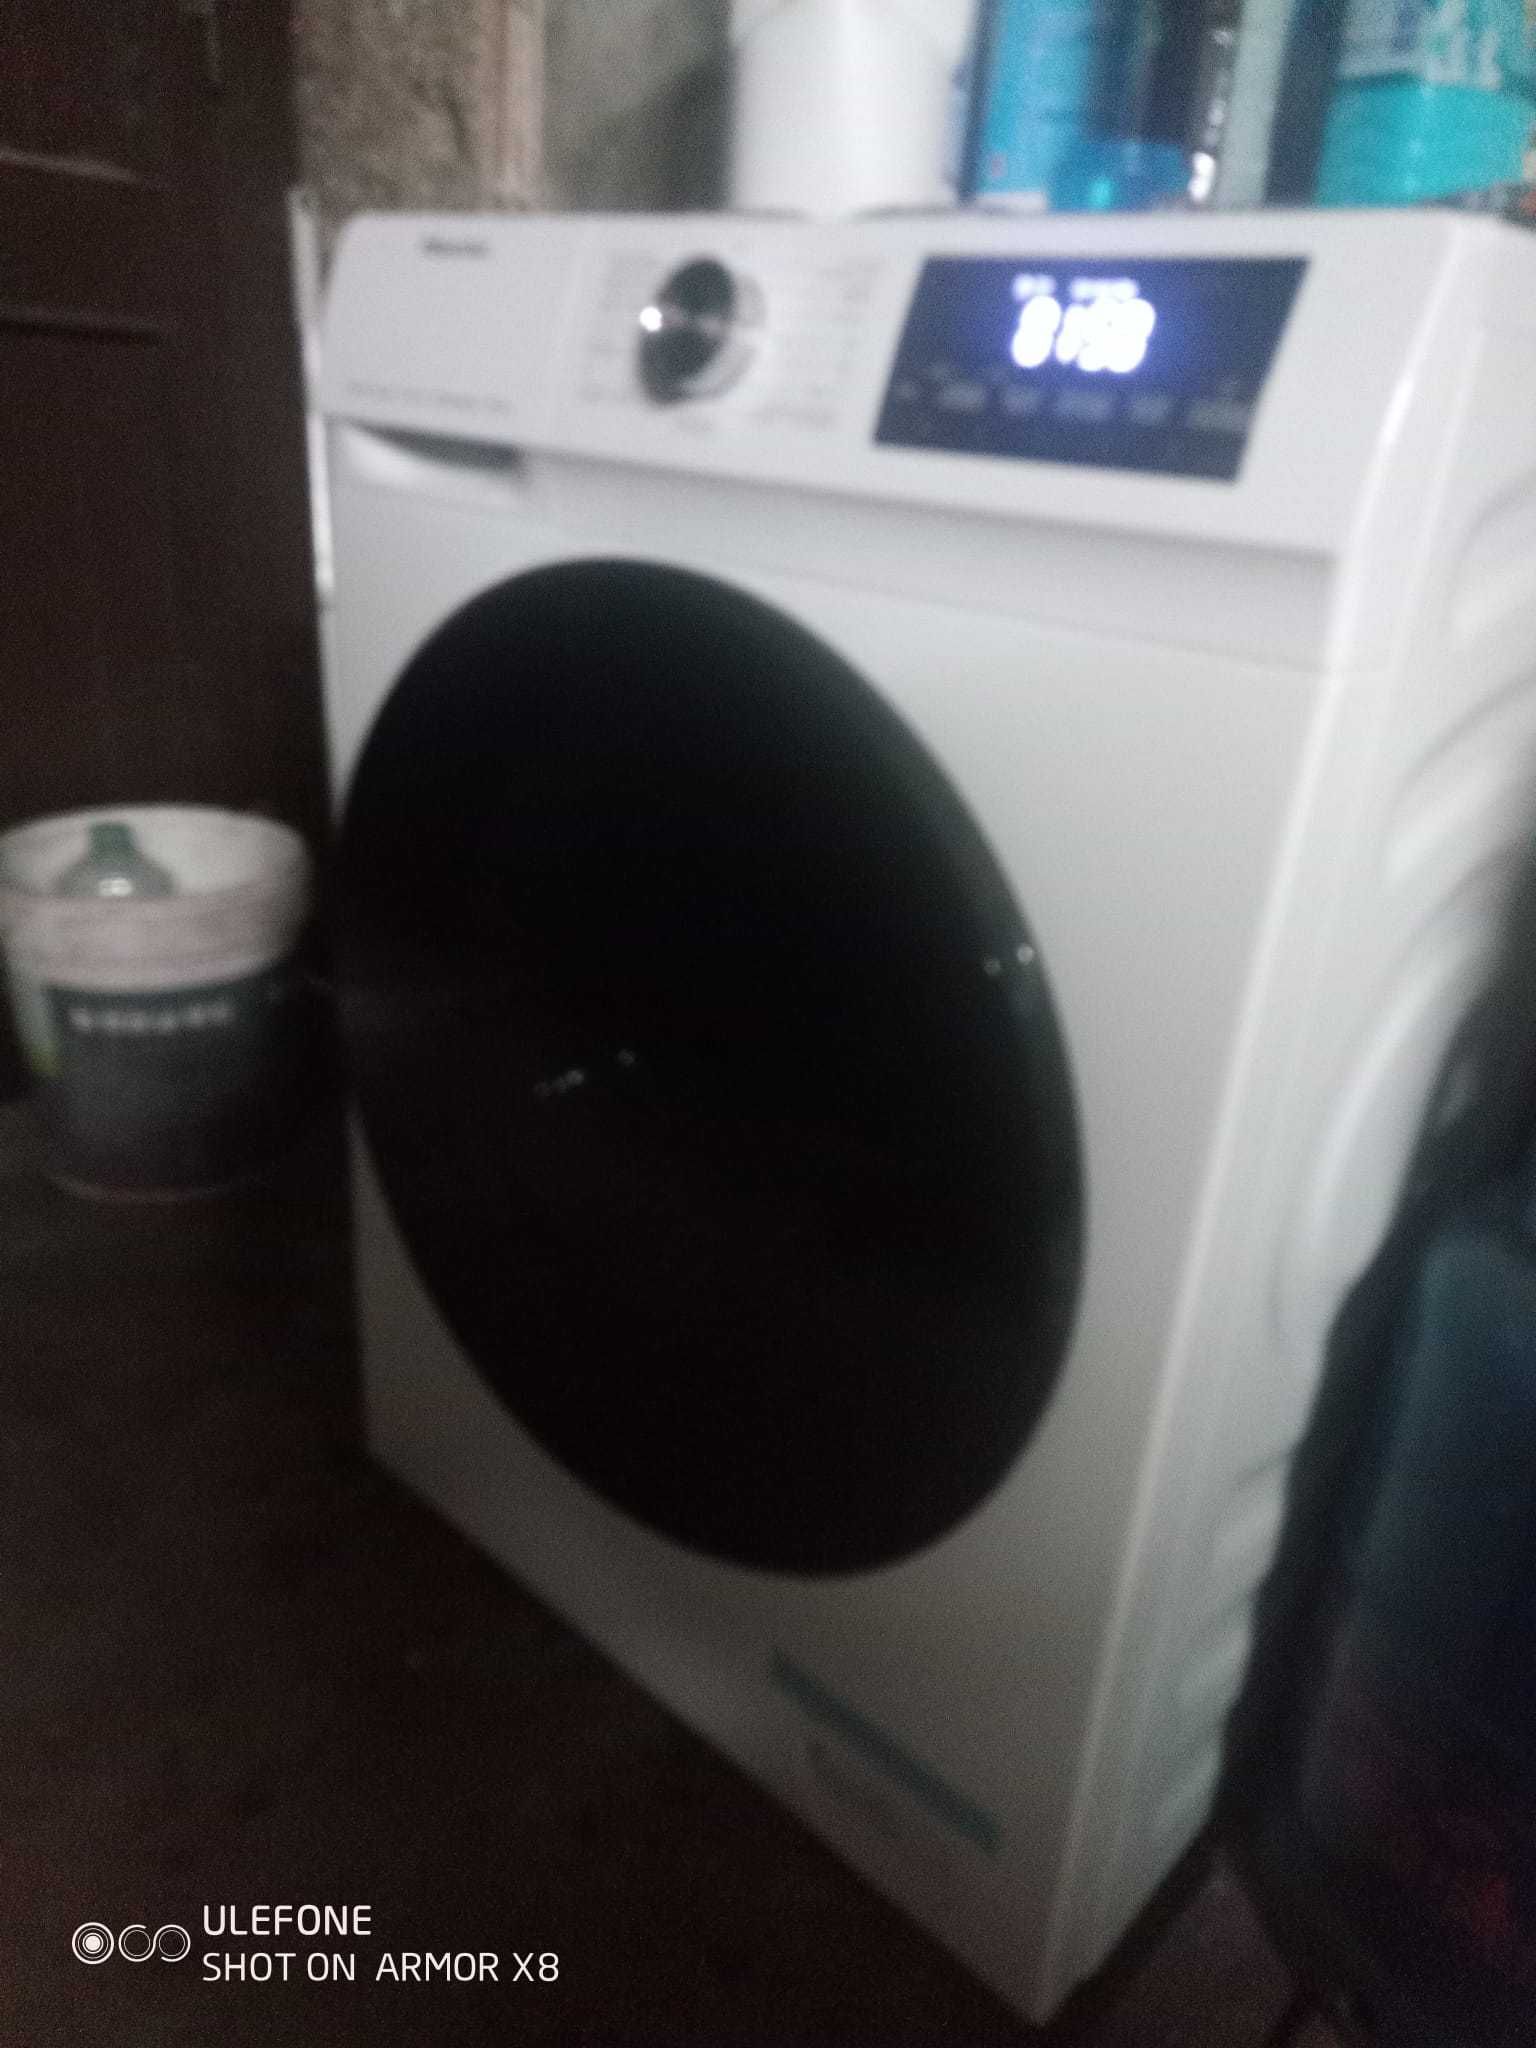 Vendo maquina de lavar e secar roupa